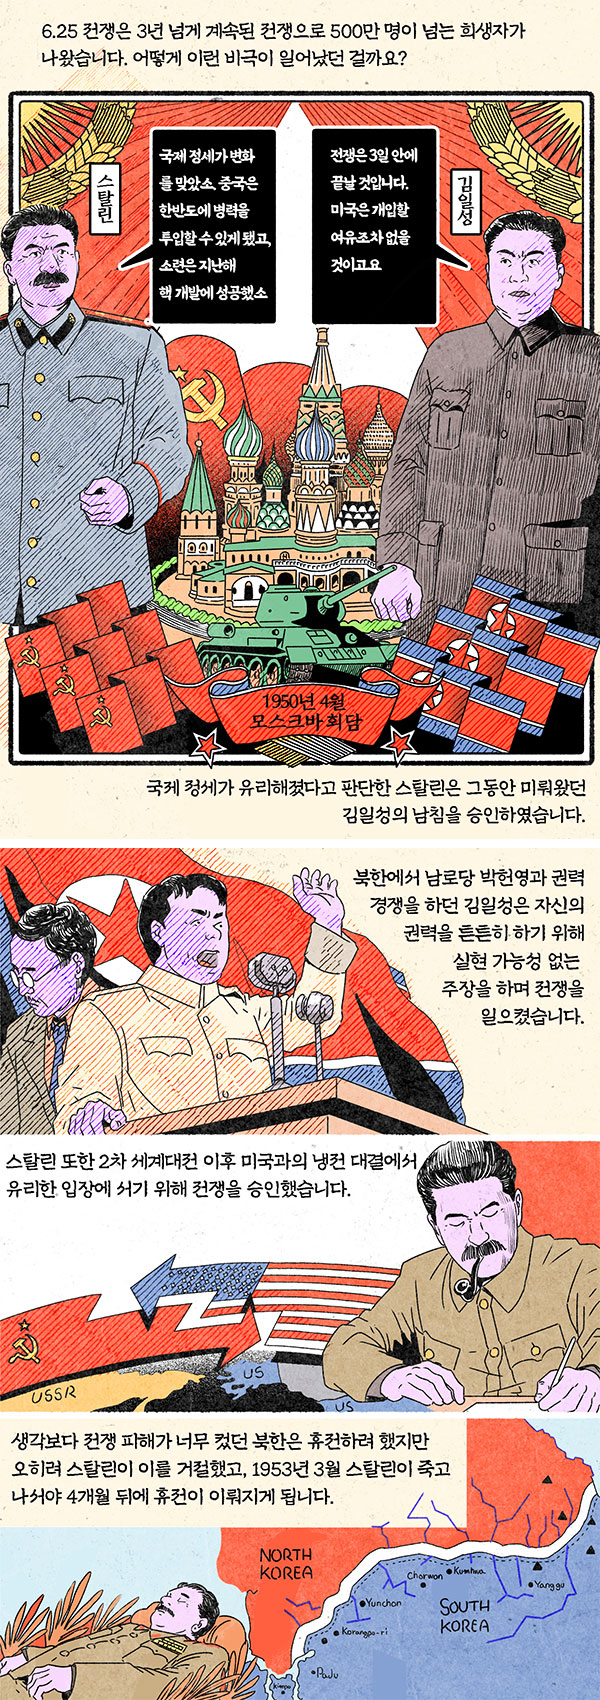 [뉴스 속의 한국사] 김일성, 스탈린과 회담서 